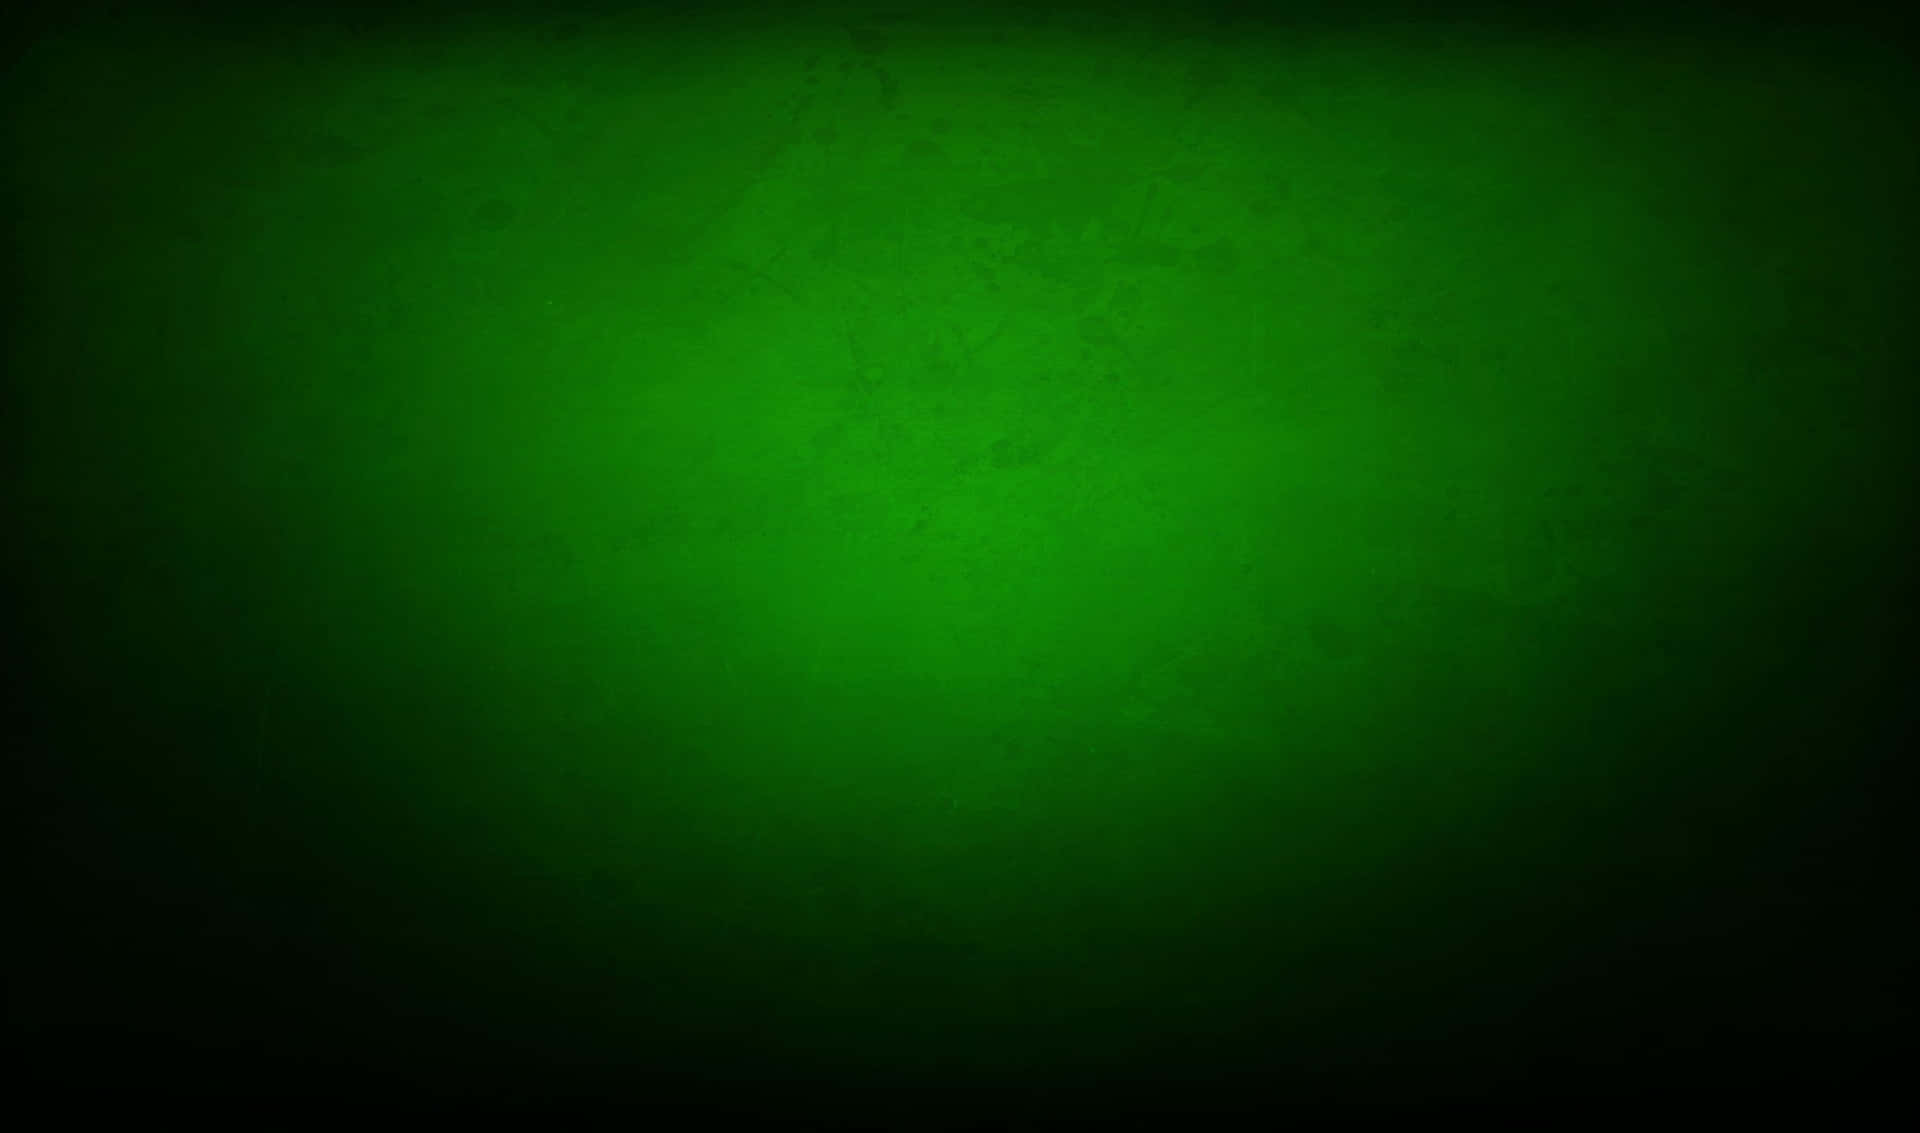 Green Grunge Background With Dark Background